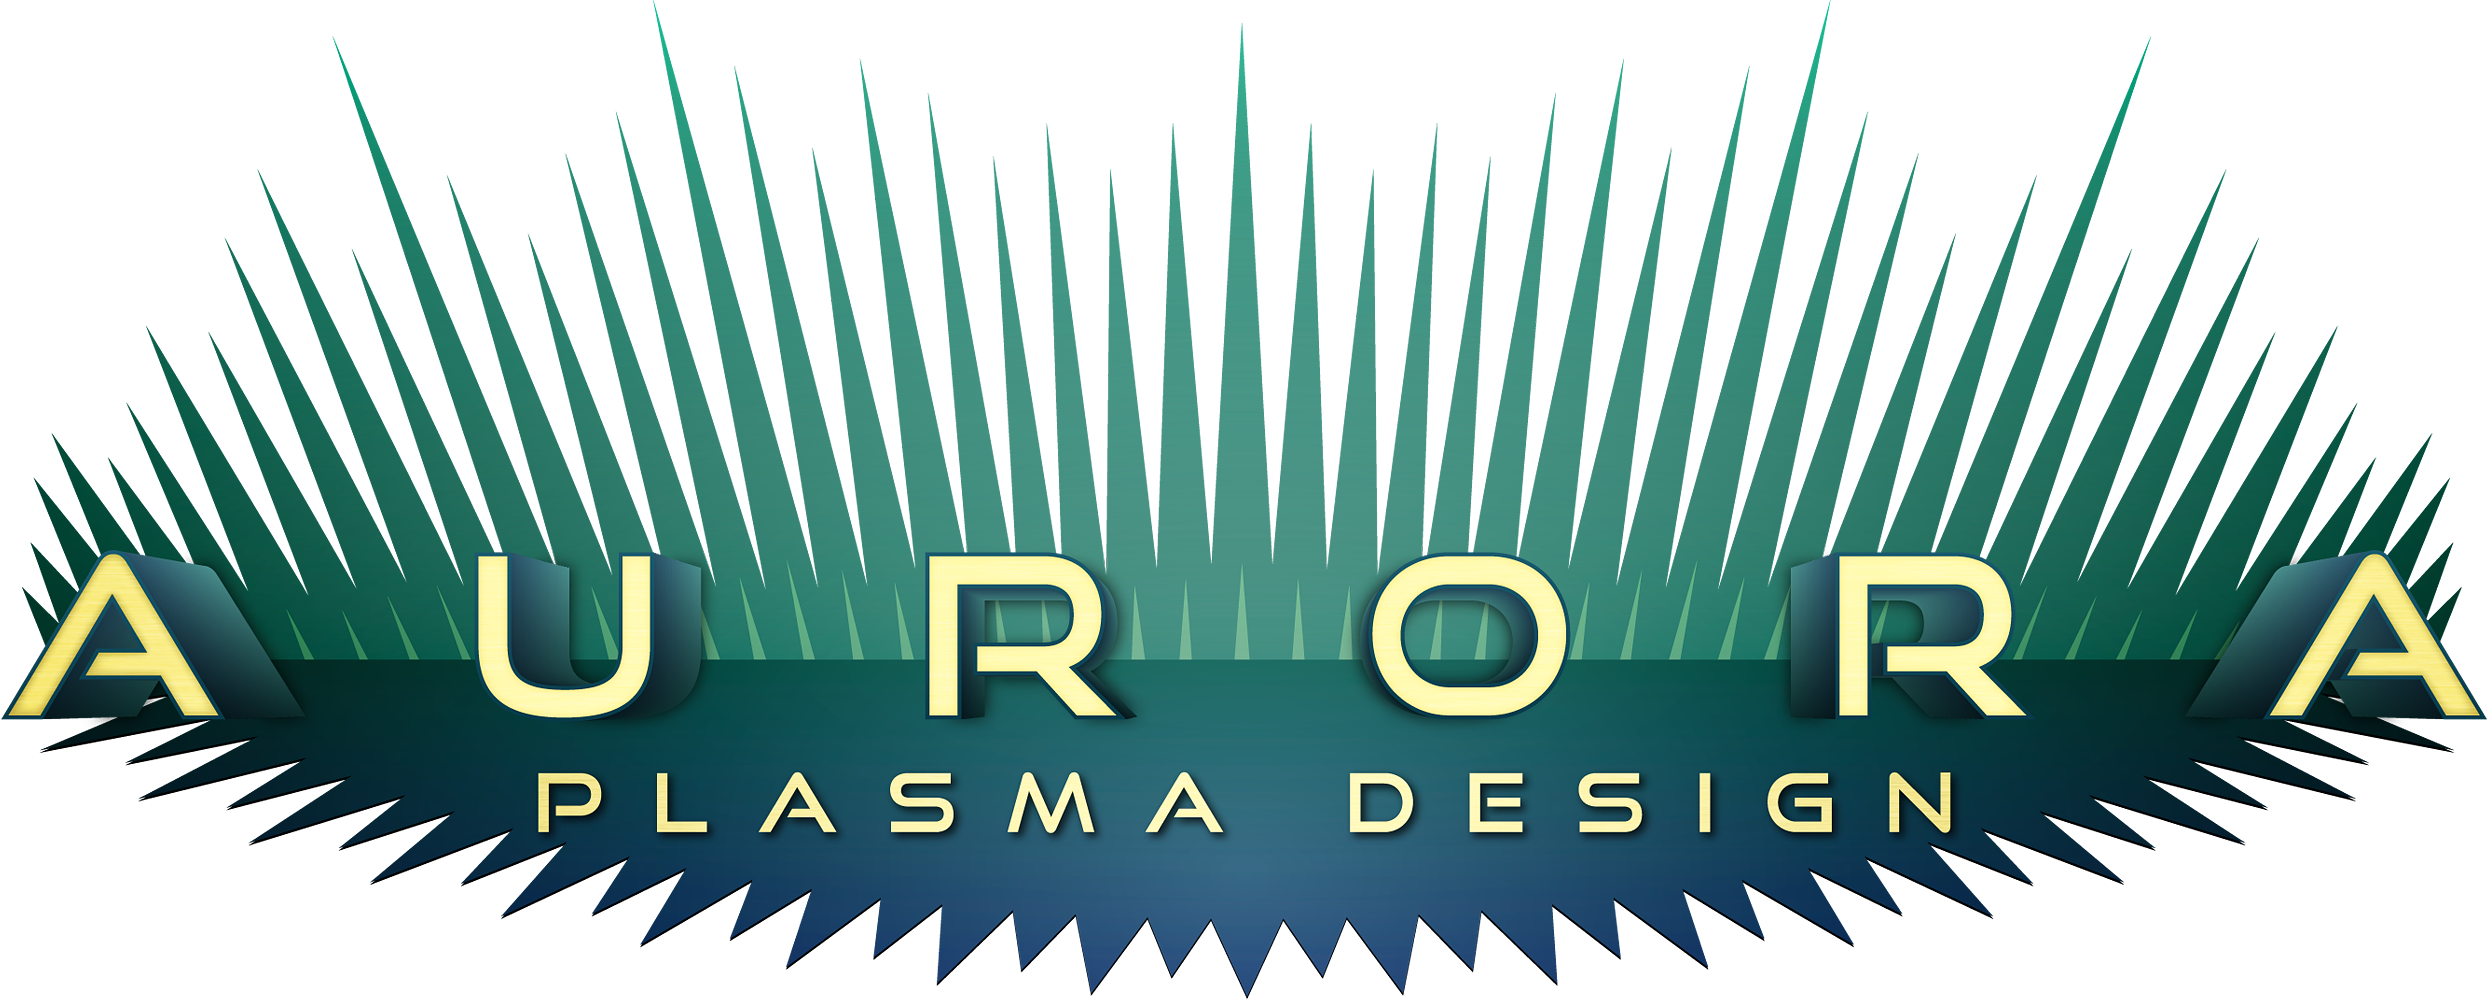 Aurora Plasma Design